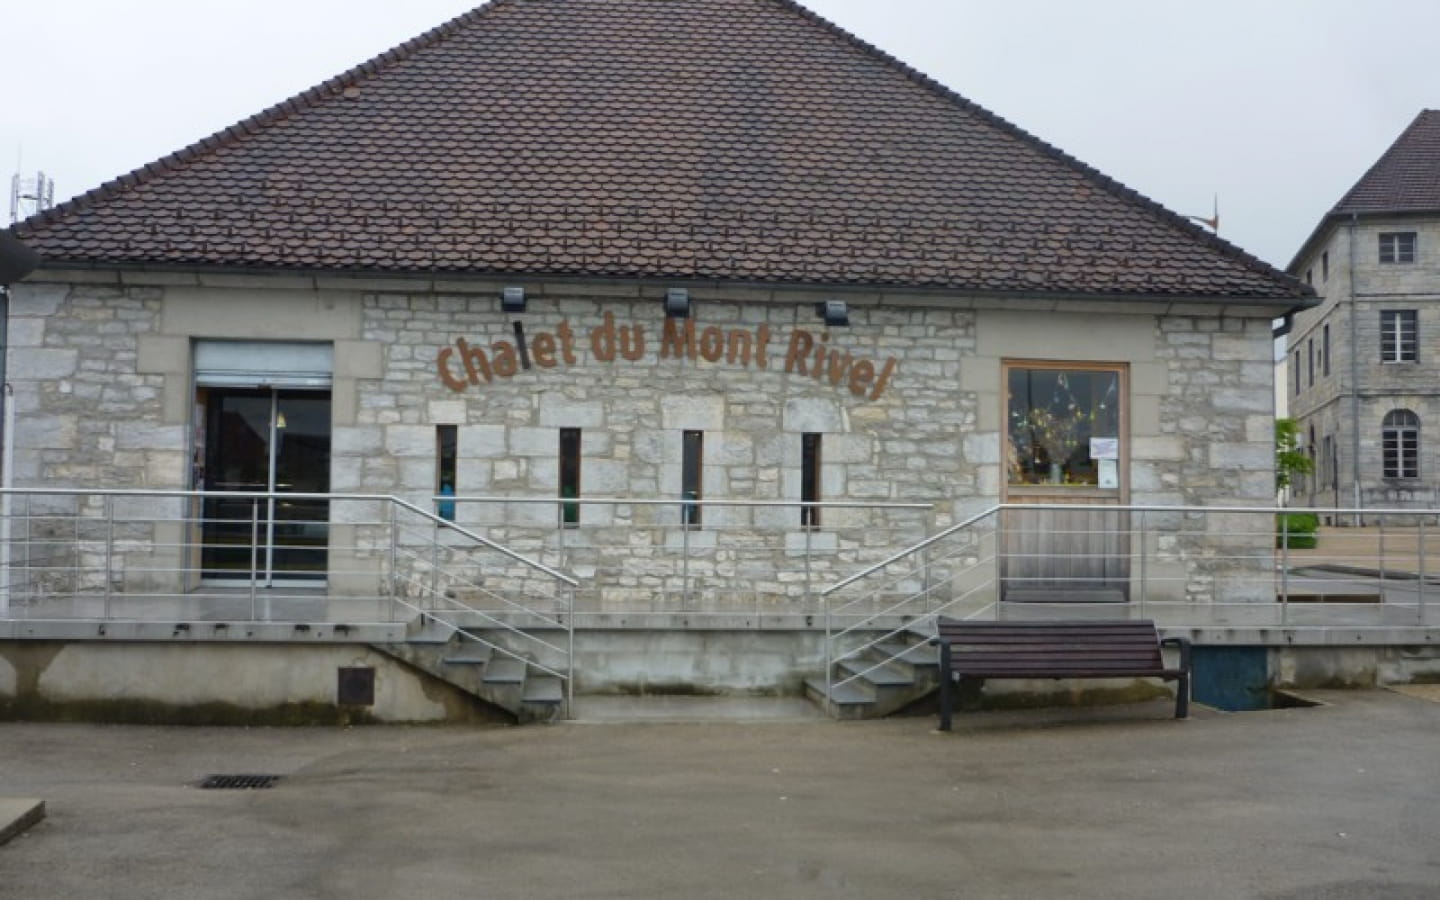 Chalet du Mont Rivel